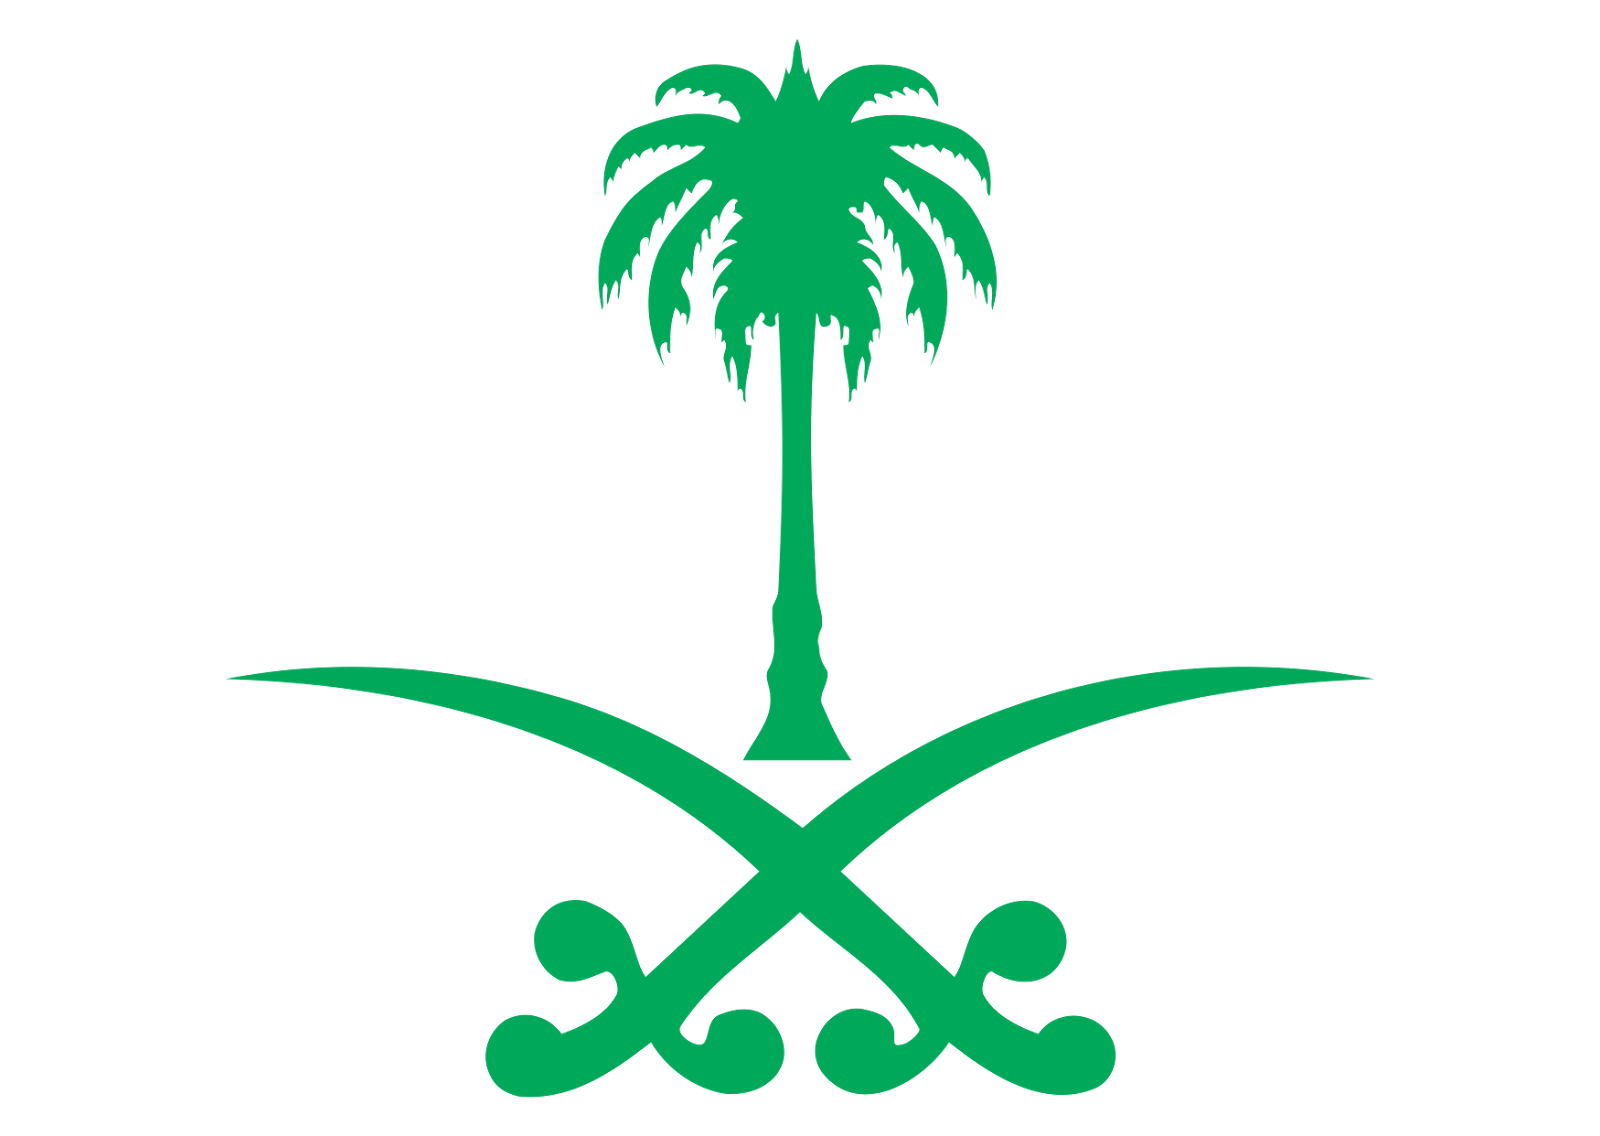 العربية الجديد السعودية المملكة علم علم المملكة